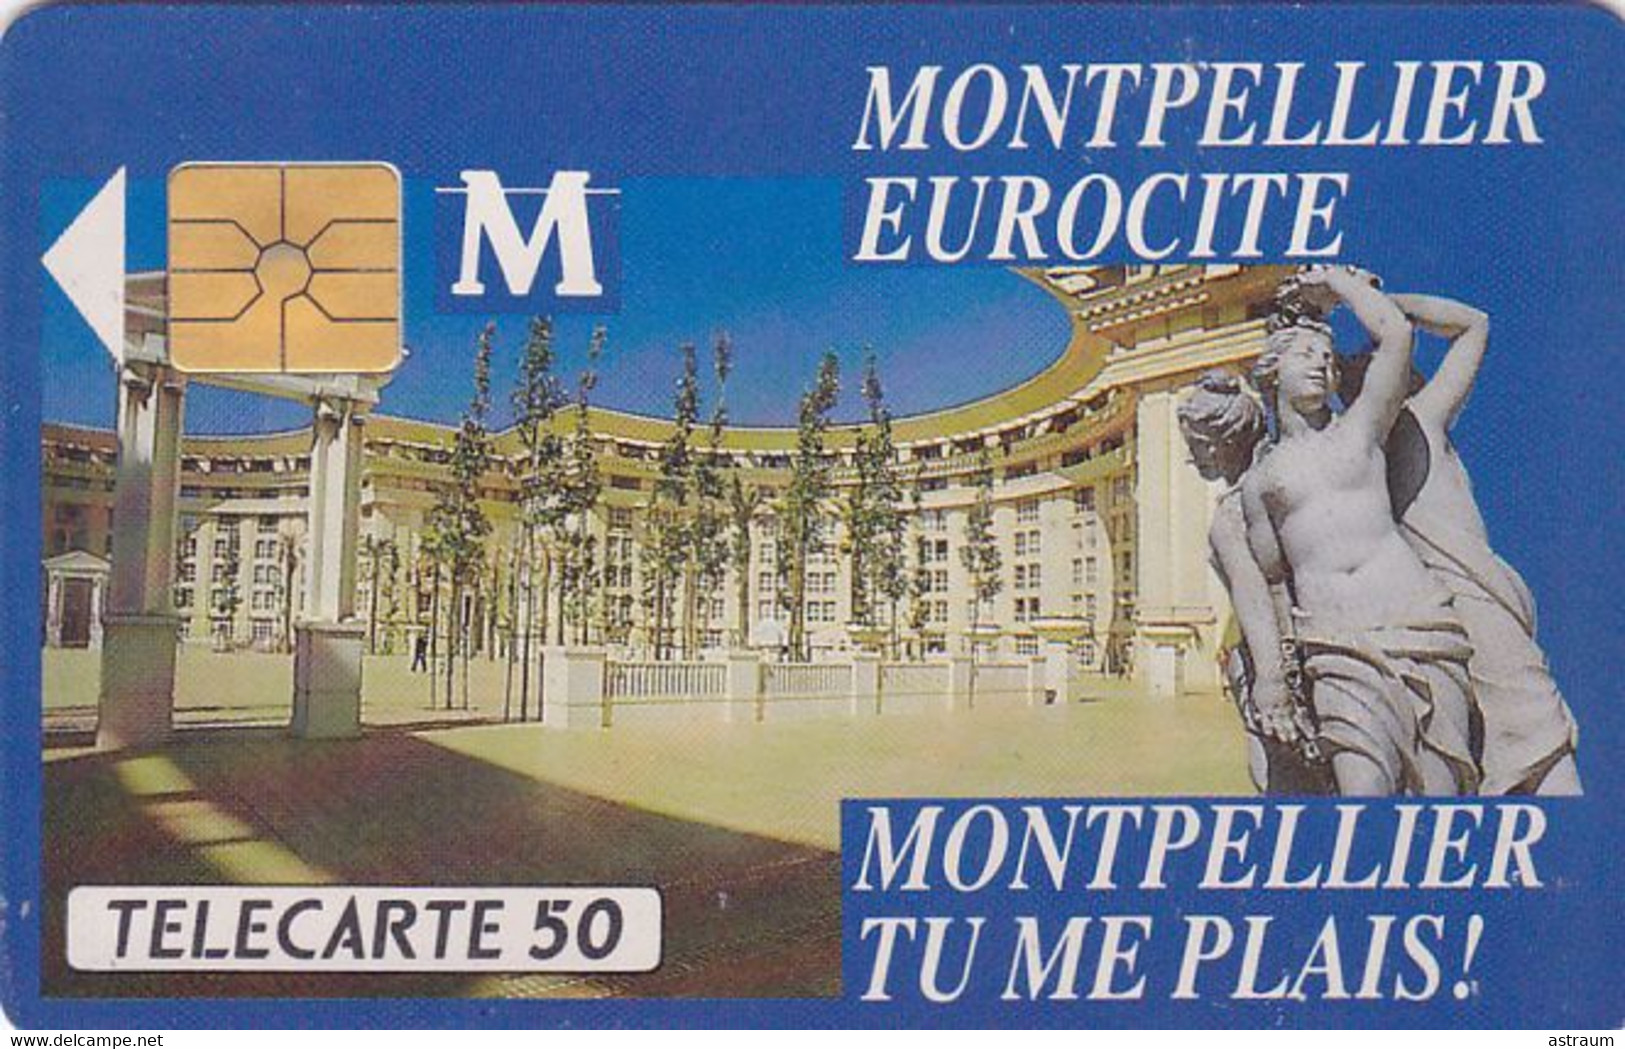 Telecarte Privée - D325 - Montpellier Eurocité - Gem - 1500 Ex  - 50 Un - 1990 - Privat